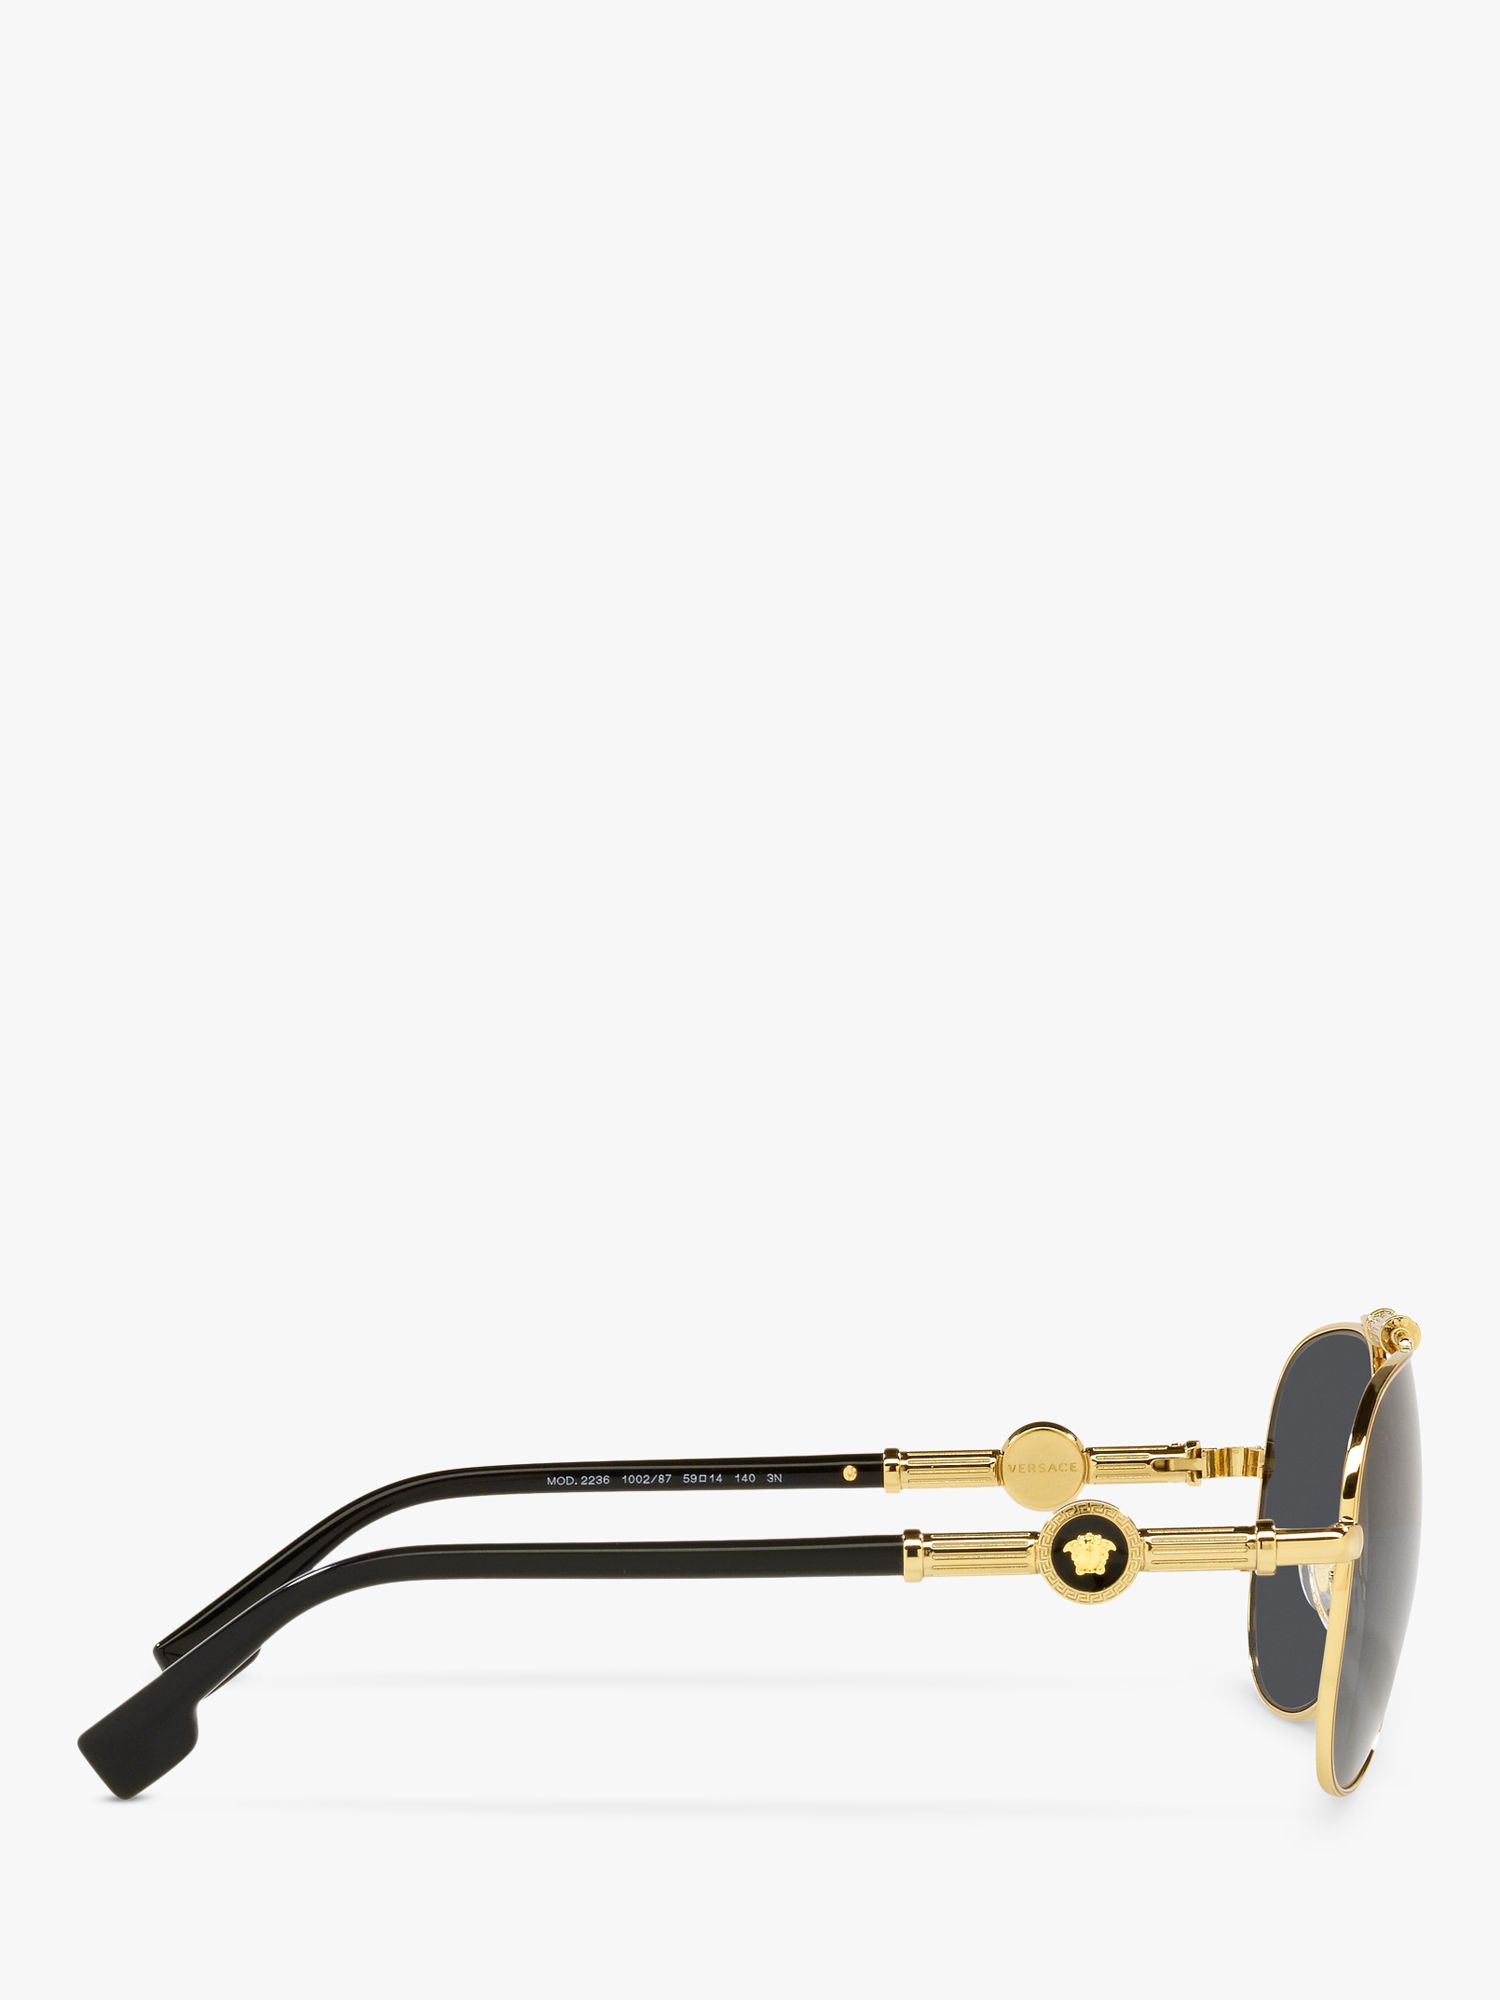 Versace VE2236 Unisex Pilot Sunglasses, Gold/Black